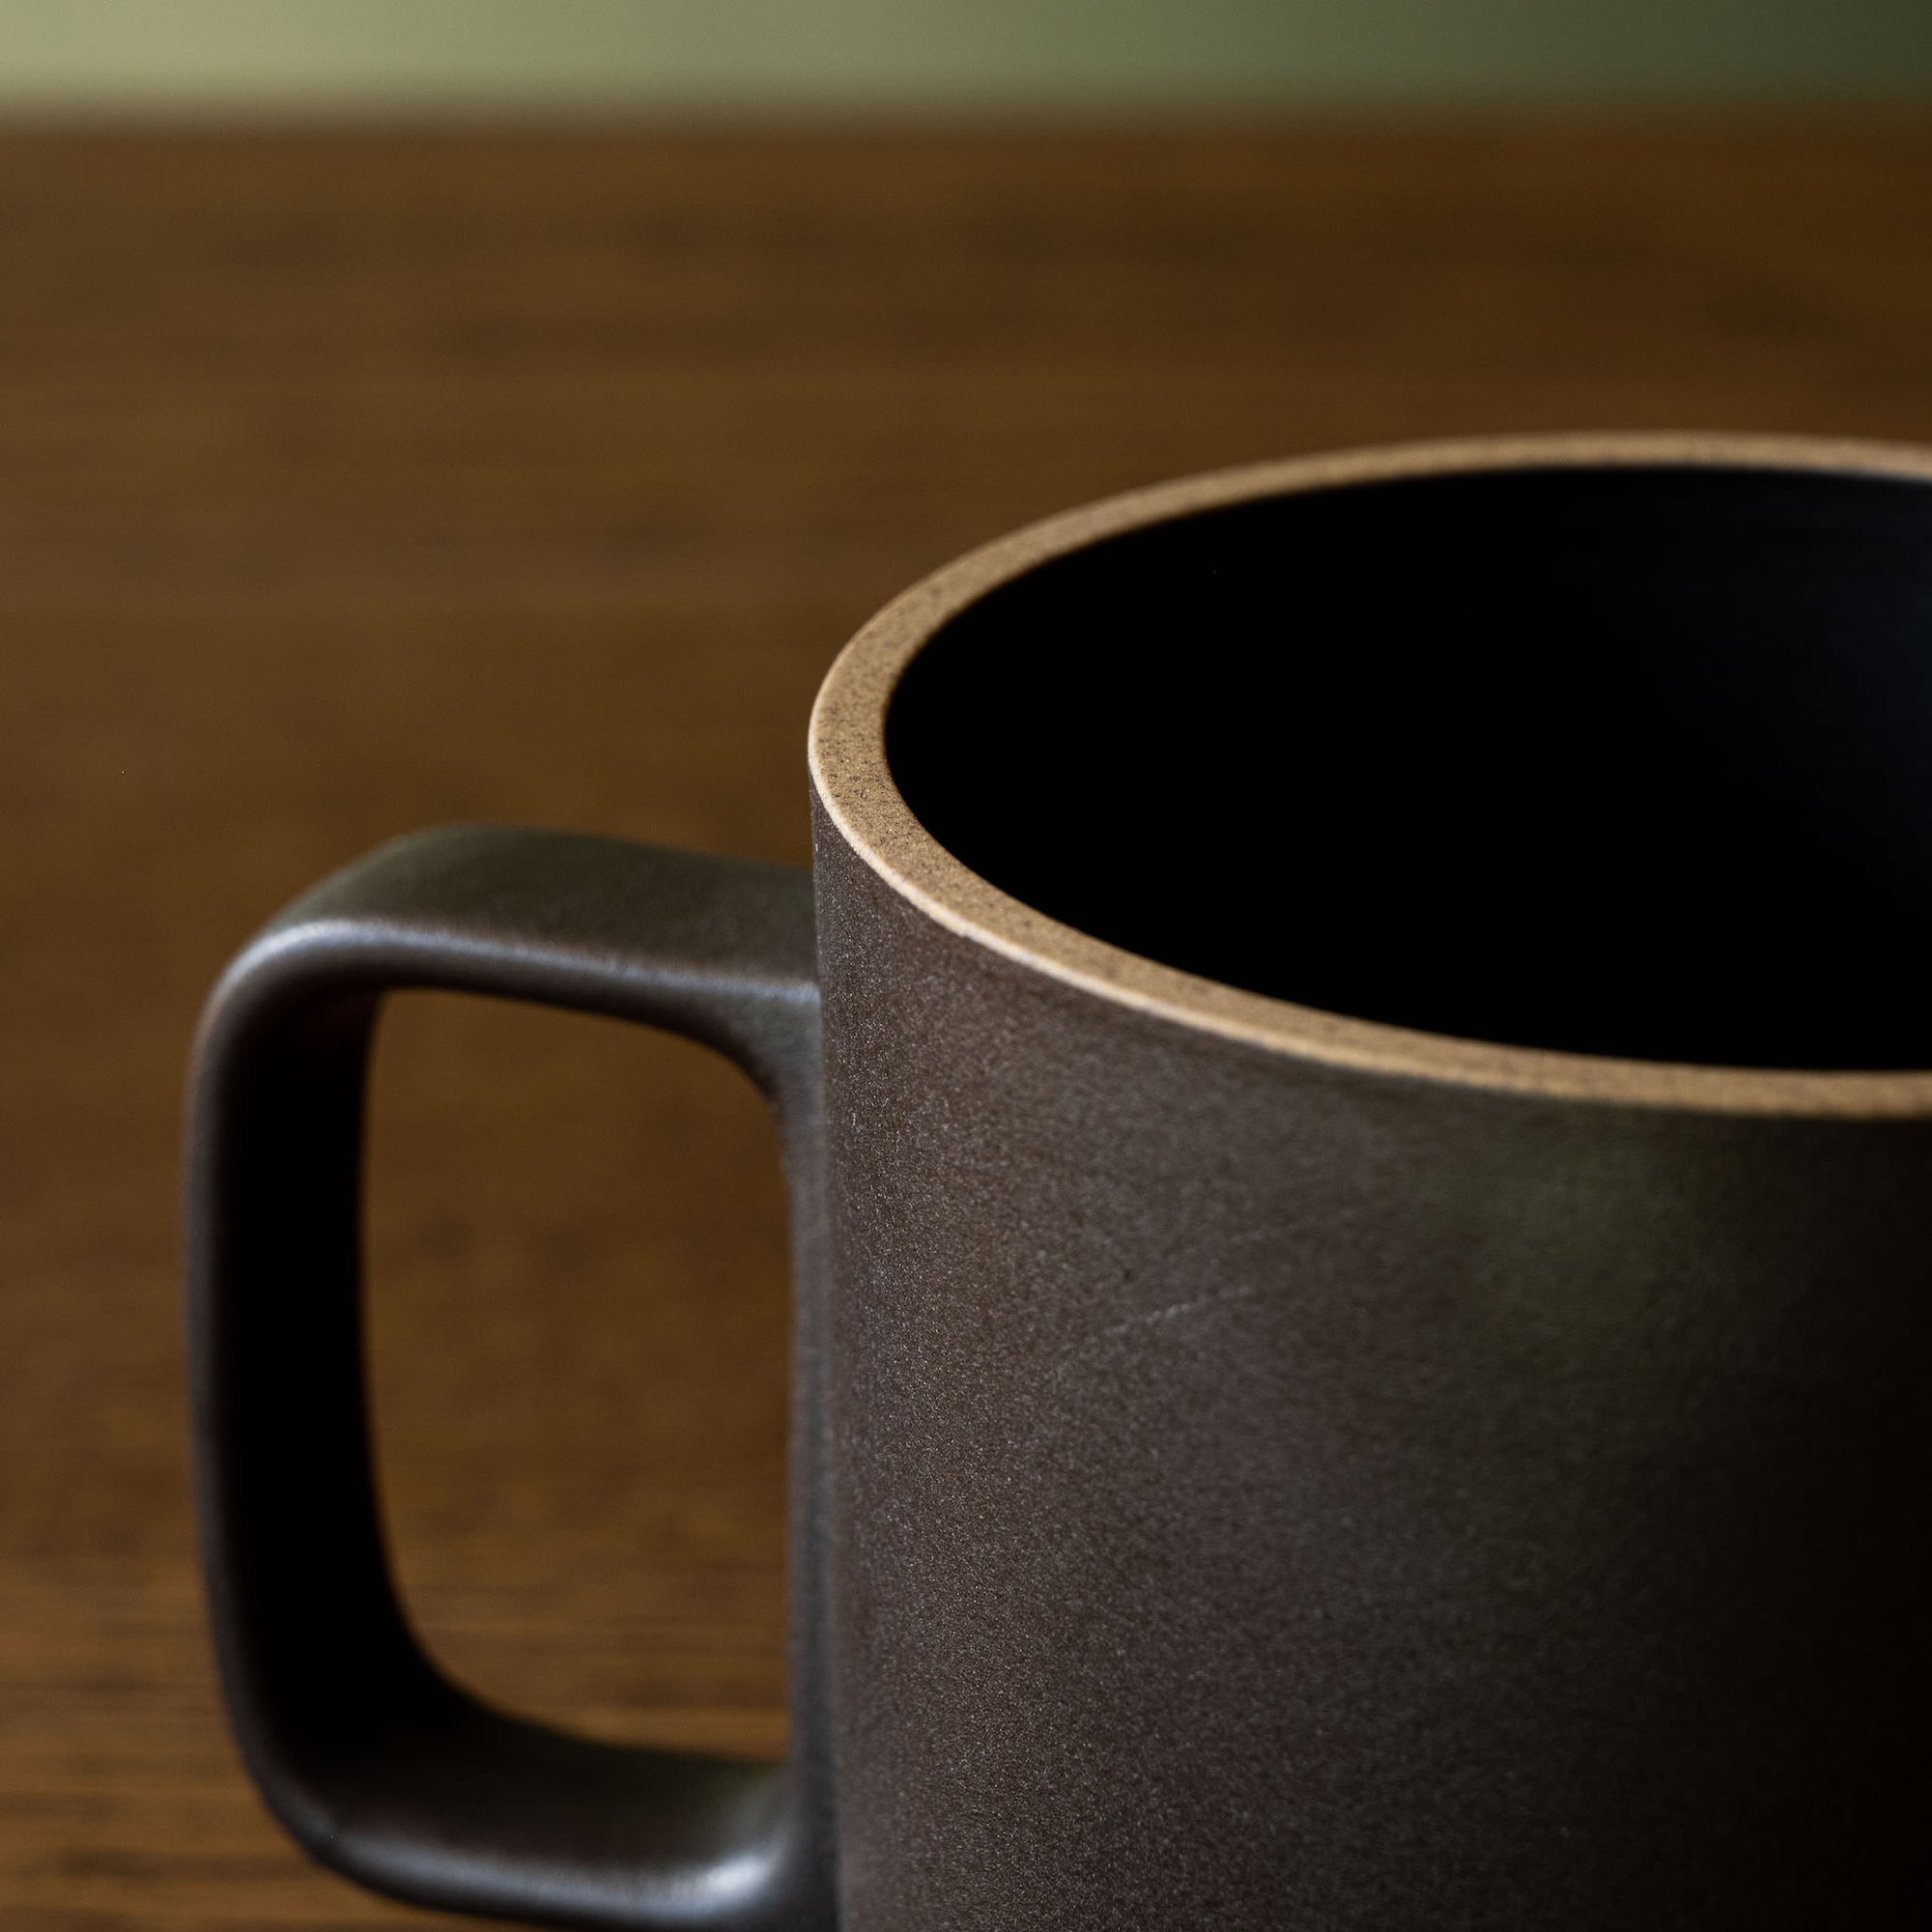 Hasami Porcelain Black Mug Close Up of Inside & Handle